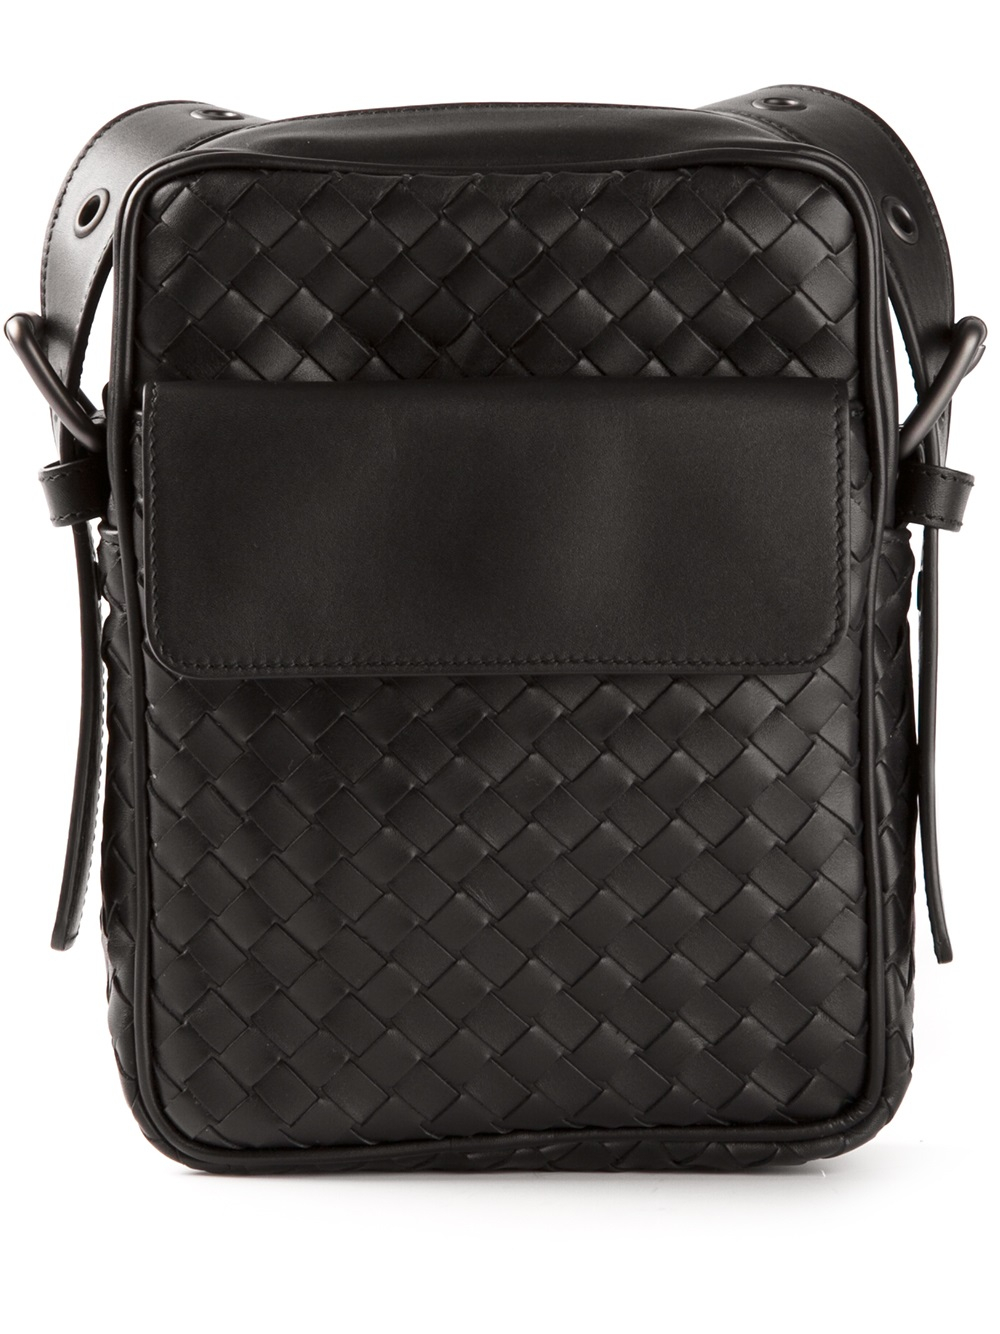 Bottega Veneta Woven Small Messenger Bag in Black for Men - Lyst